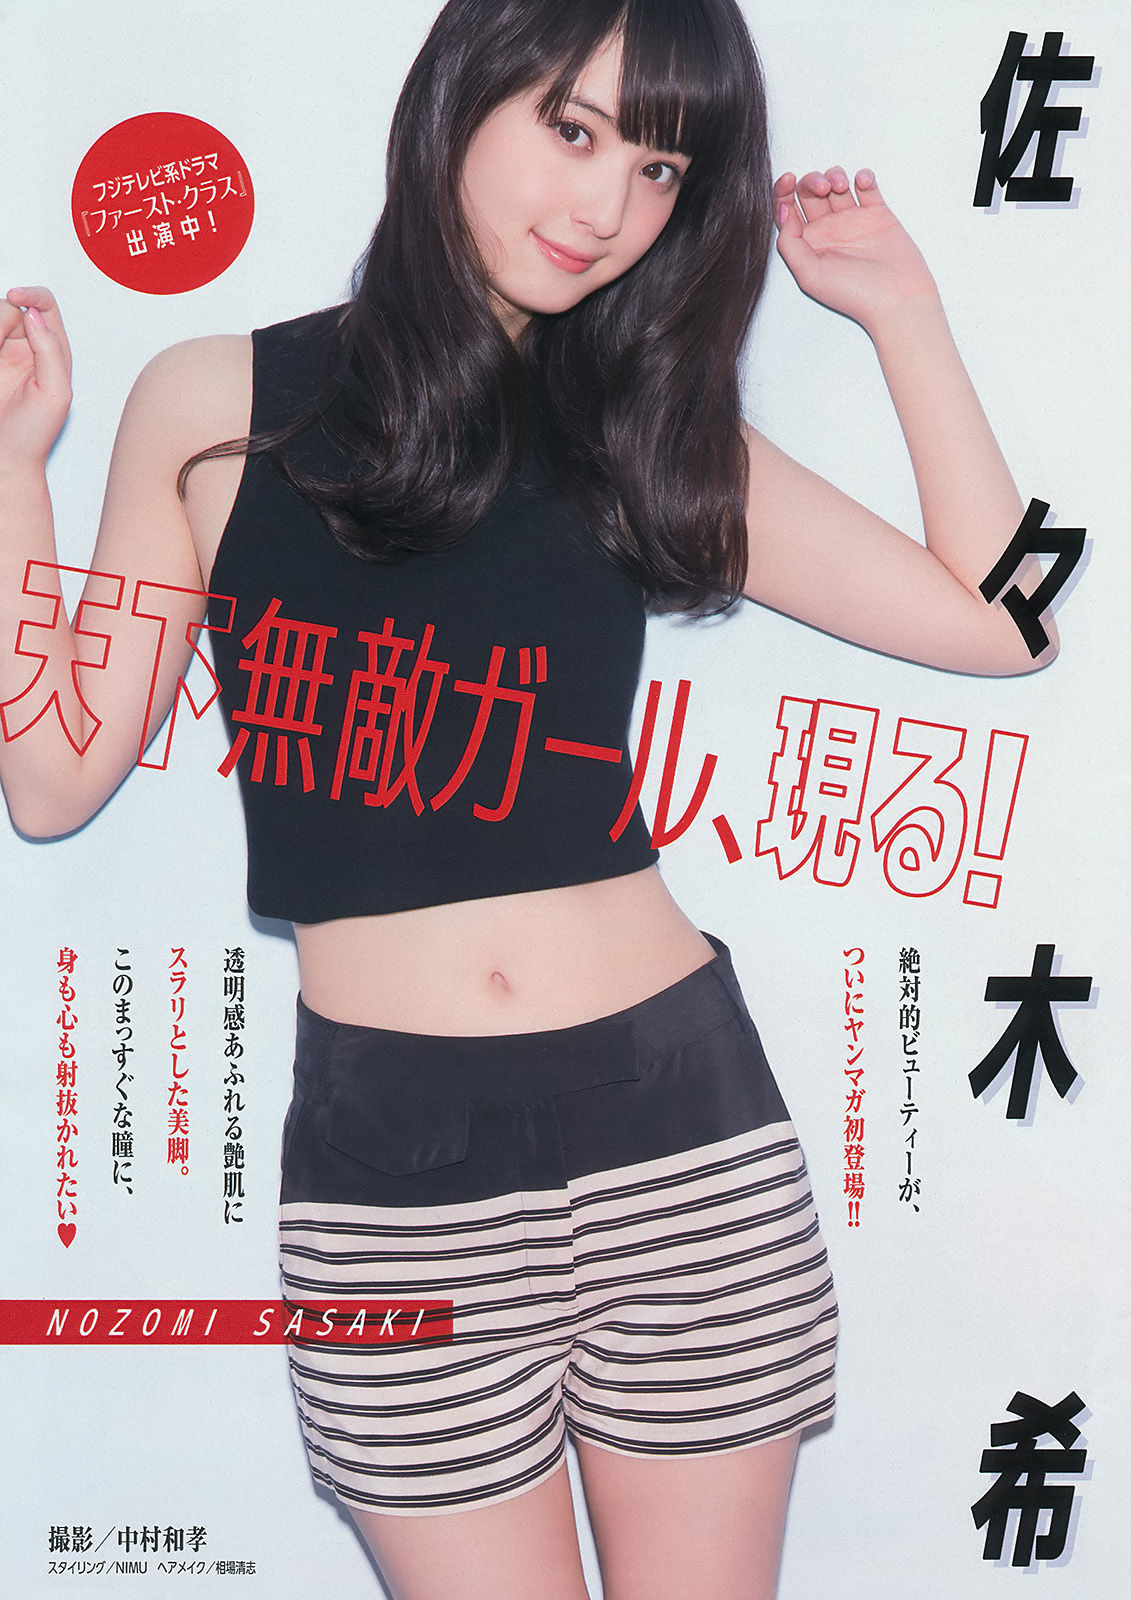 [Young Magazine]杂志:佐佐木希无圣光私房照片在线浏览(12P)